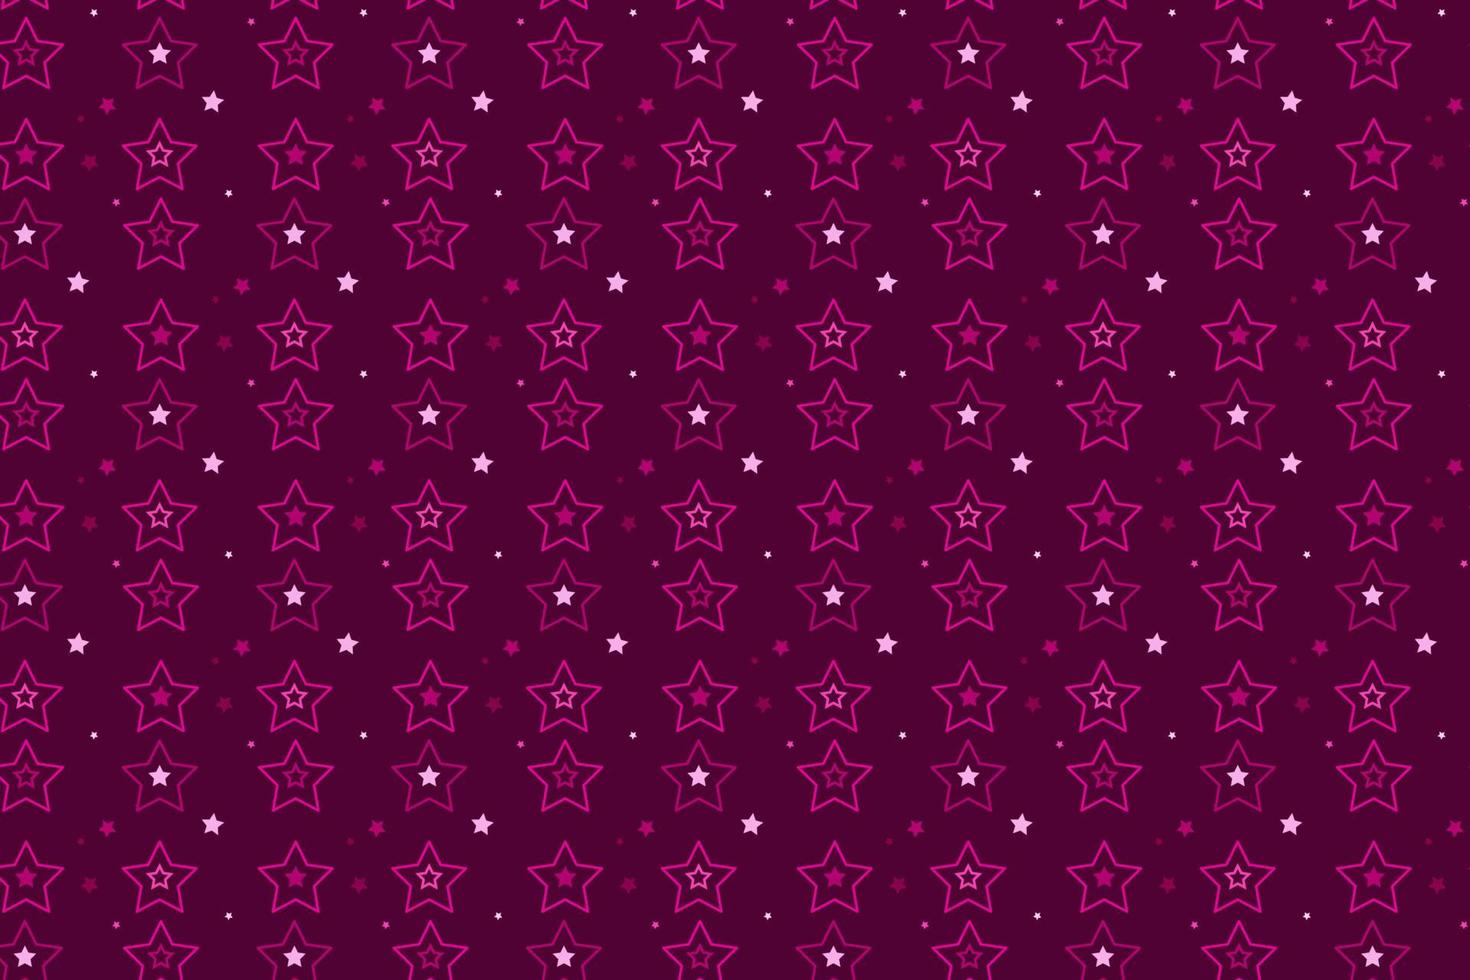 padrão com elementos geométricos em tons de rosa. fundo abstrato vetor